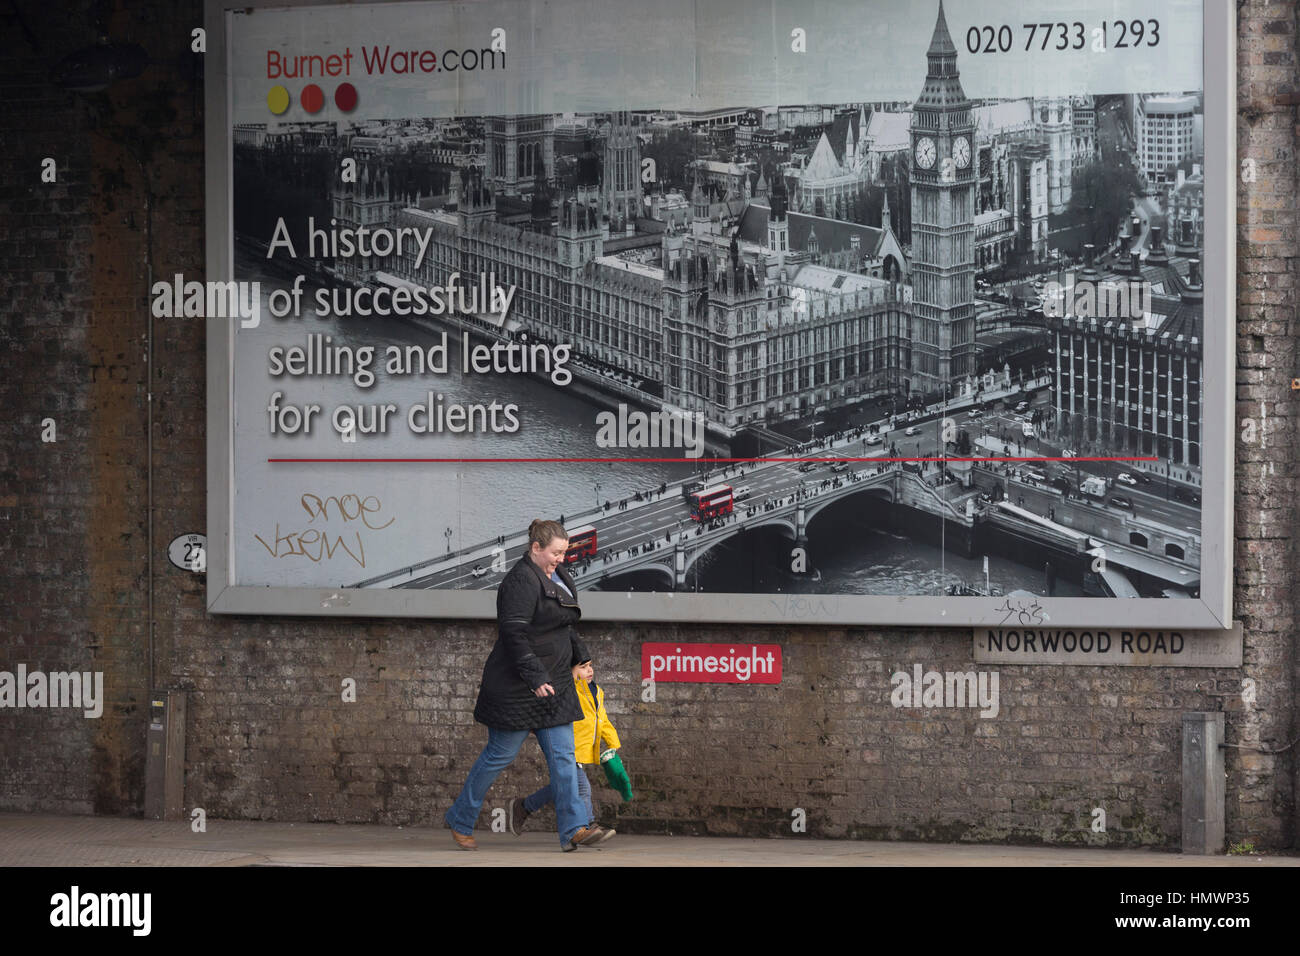 Un londinese passeggiate al di sotto di una pubblicità tramite Affissioni l'agente immobiliare Burnett Ware, il 6 febbraio 2017, a Herne Hill, London borough di Lambeth, Inghilterra. Foto Stock